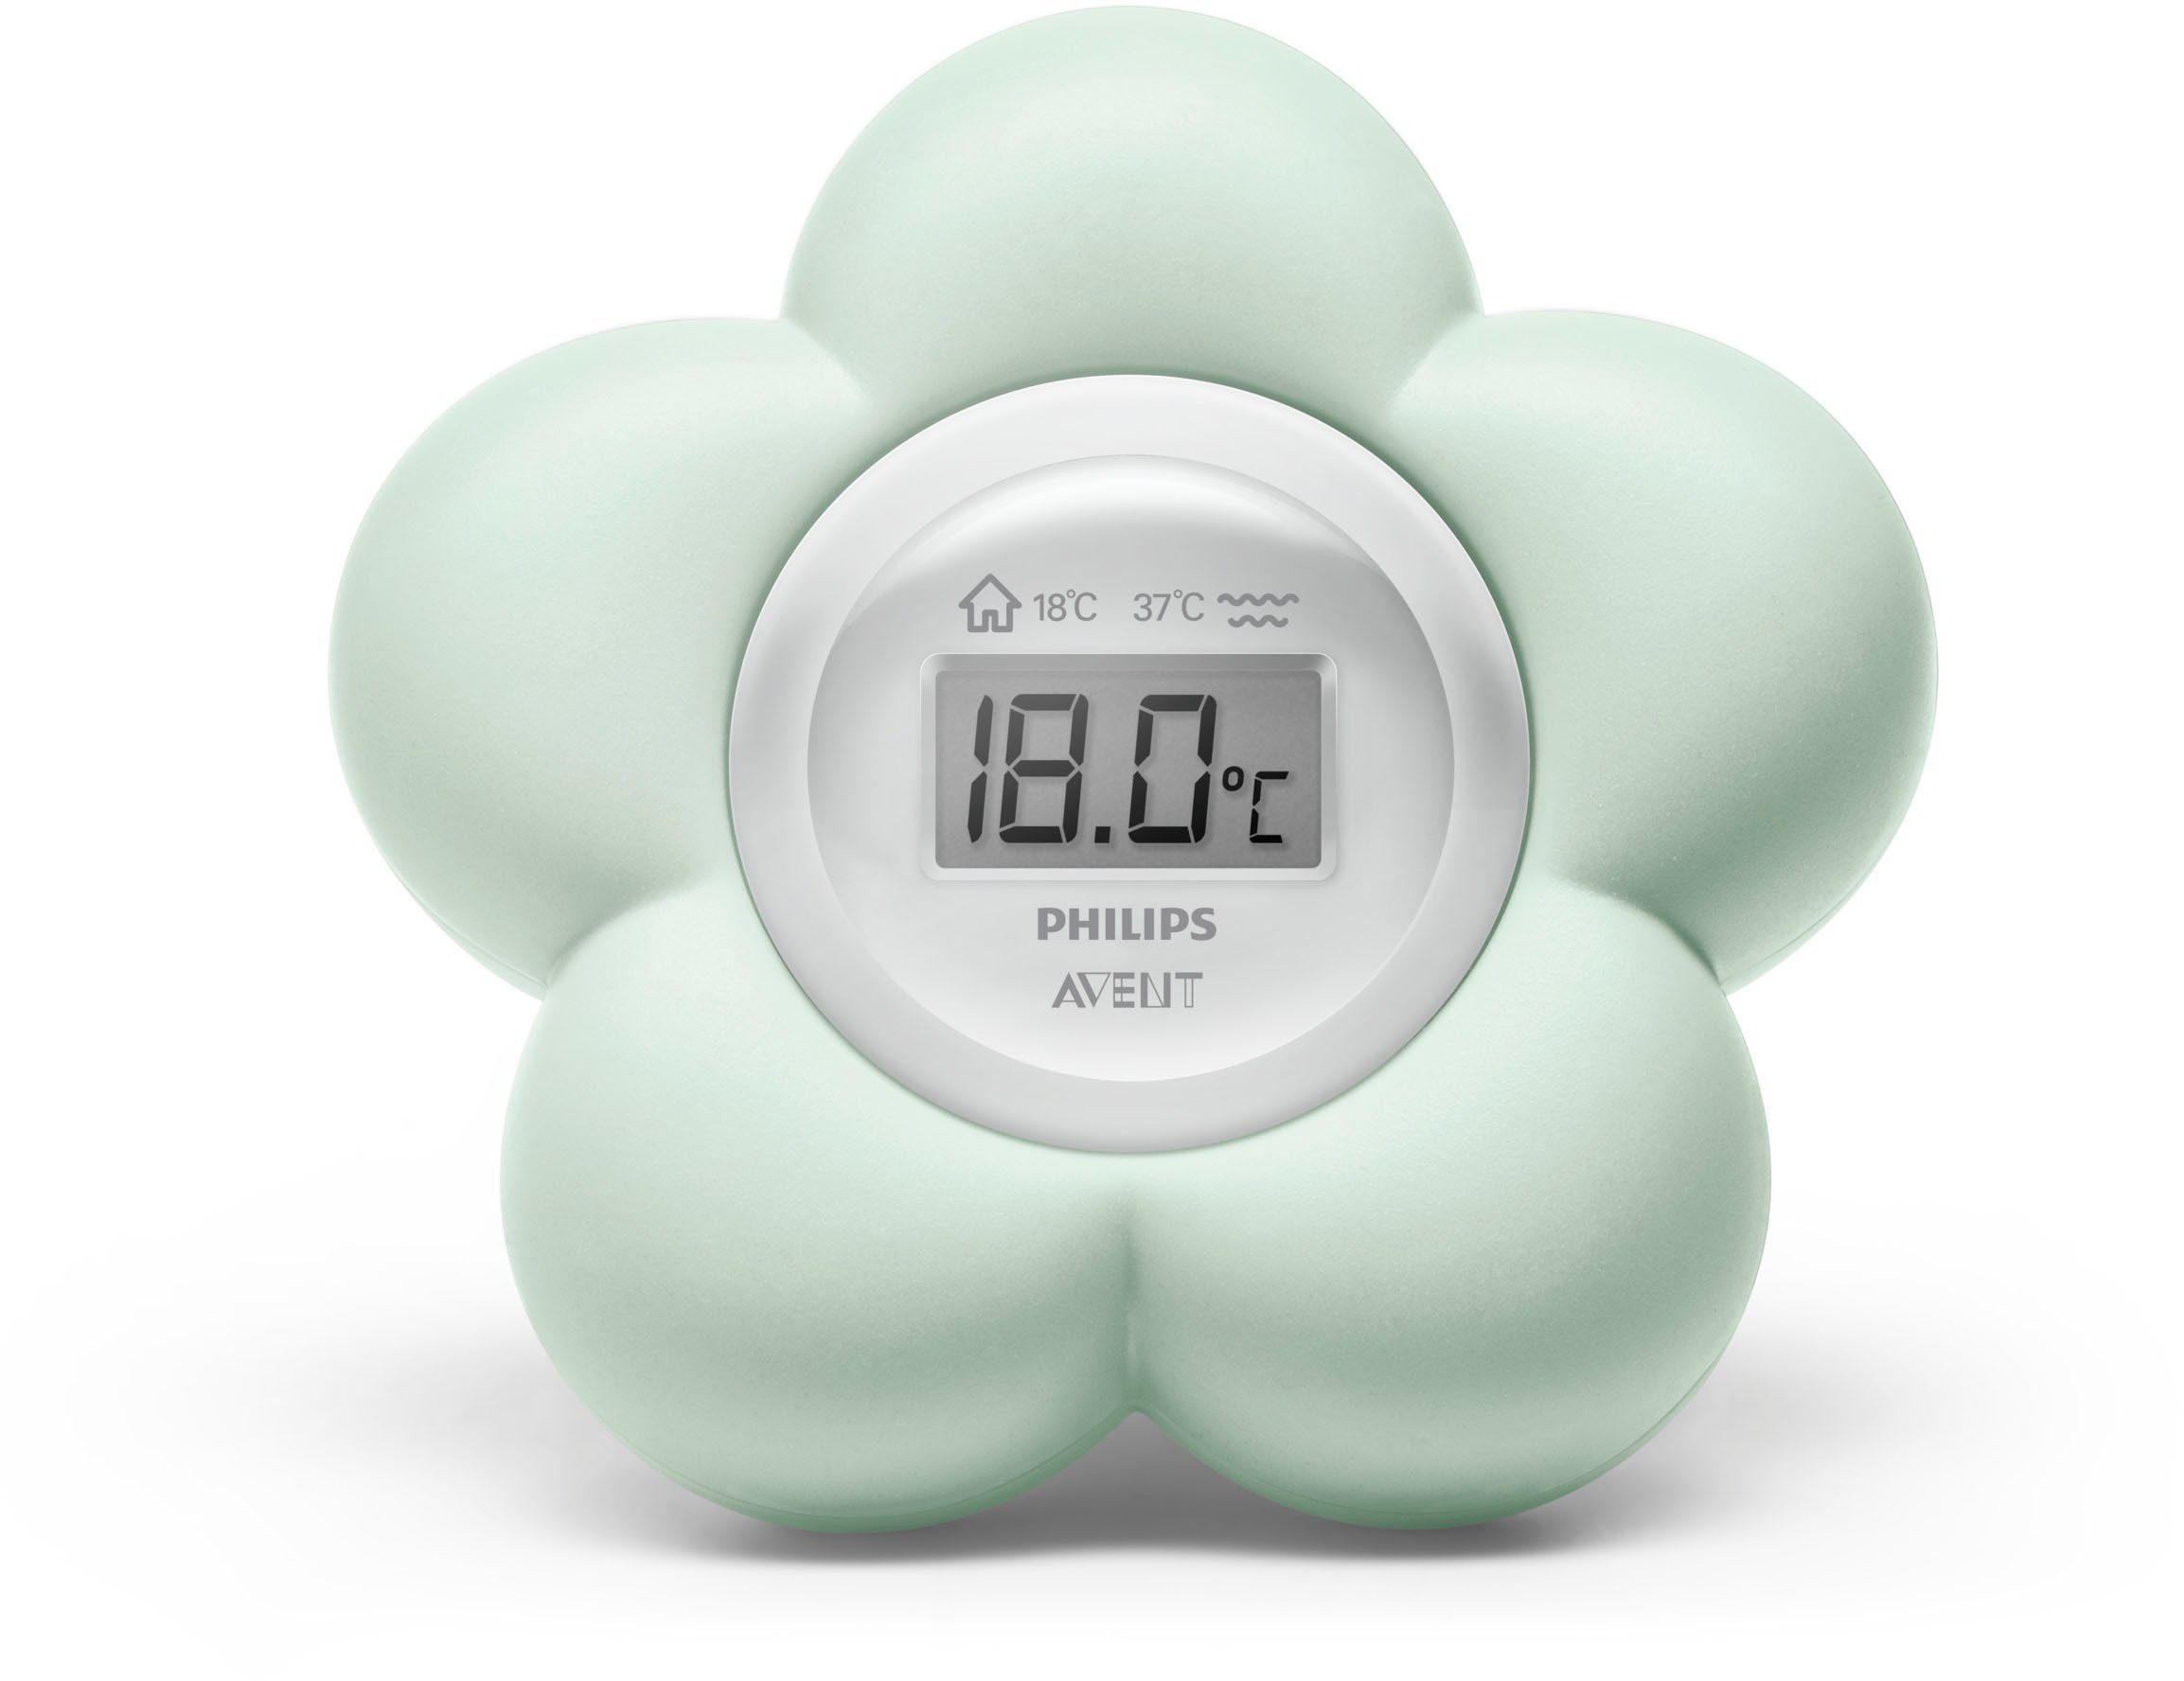 Badethermometer Küchenartikel & Haushaltsartikel Haushaltsgeräte Thermometer Badethermometer Bär/ Babyono 